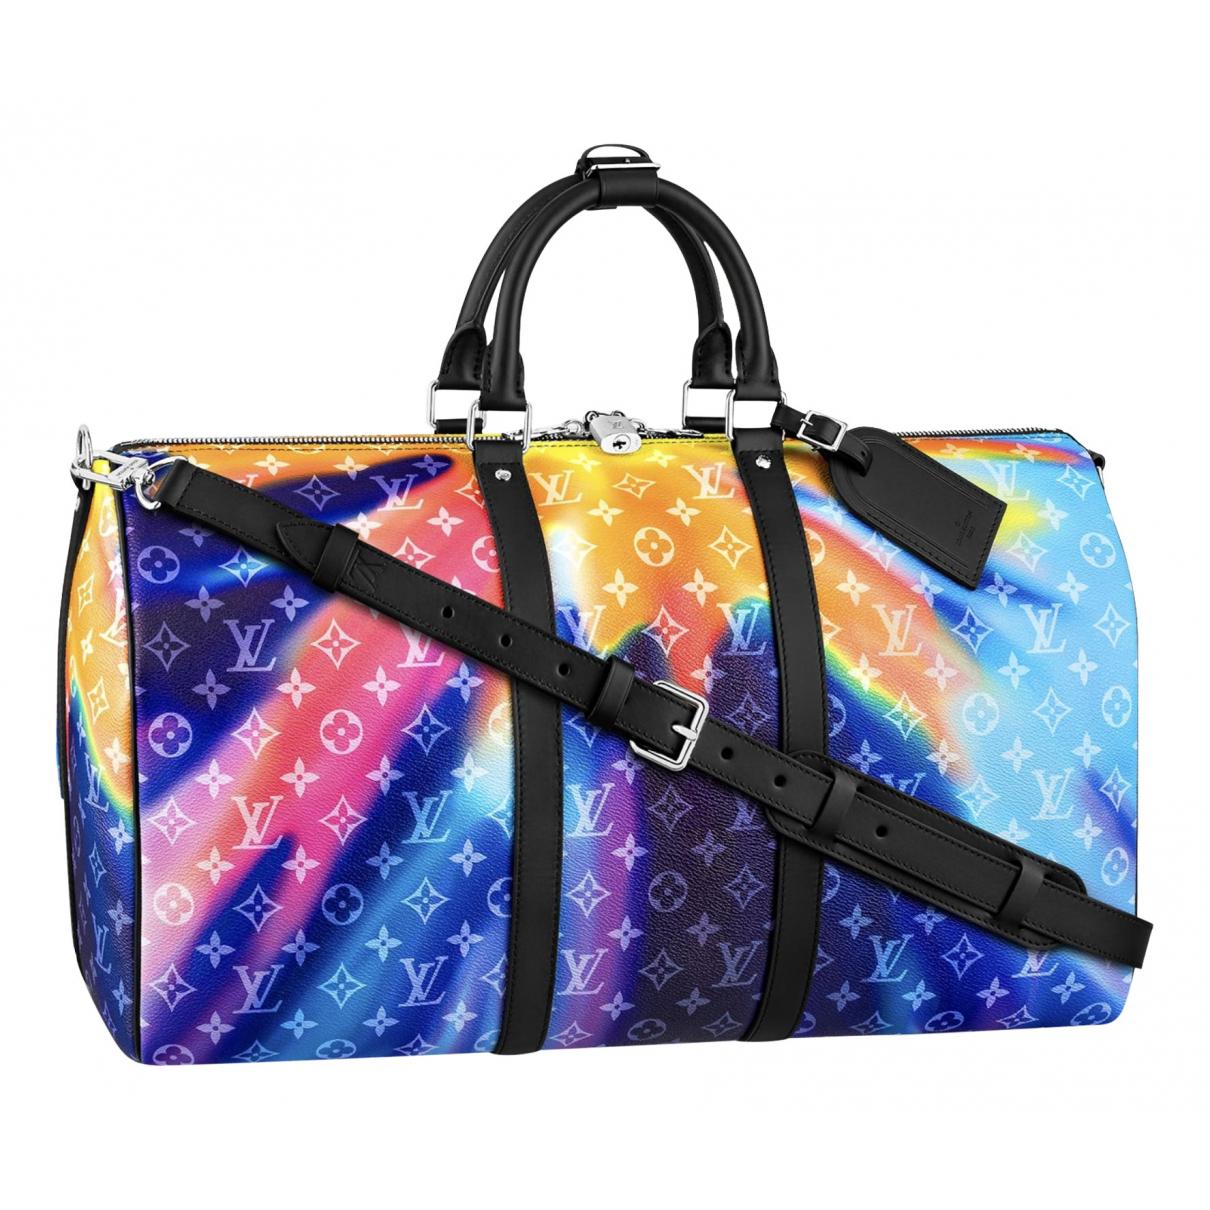 Keepall cloth travel bag Louis Vuitton Brown in Cloth - 26119620